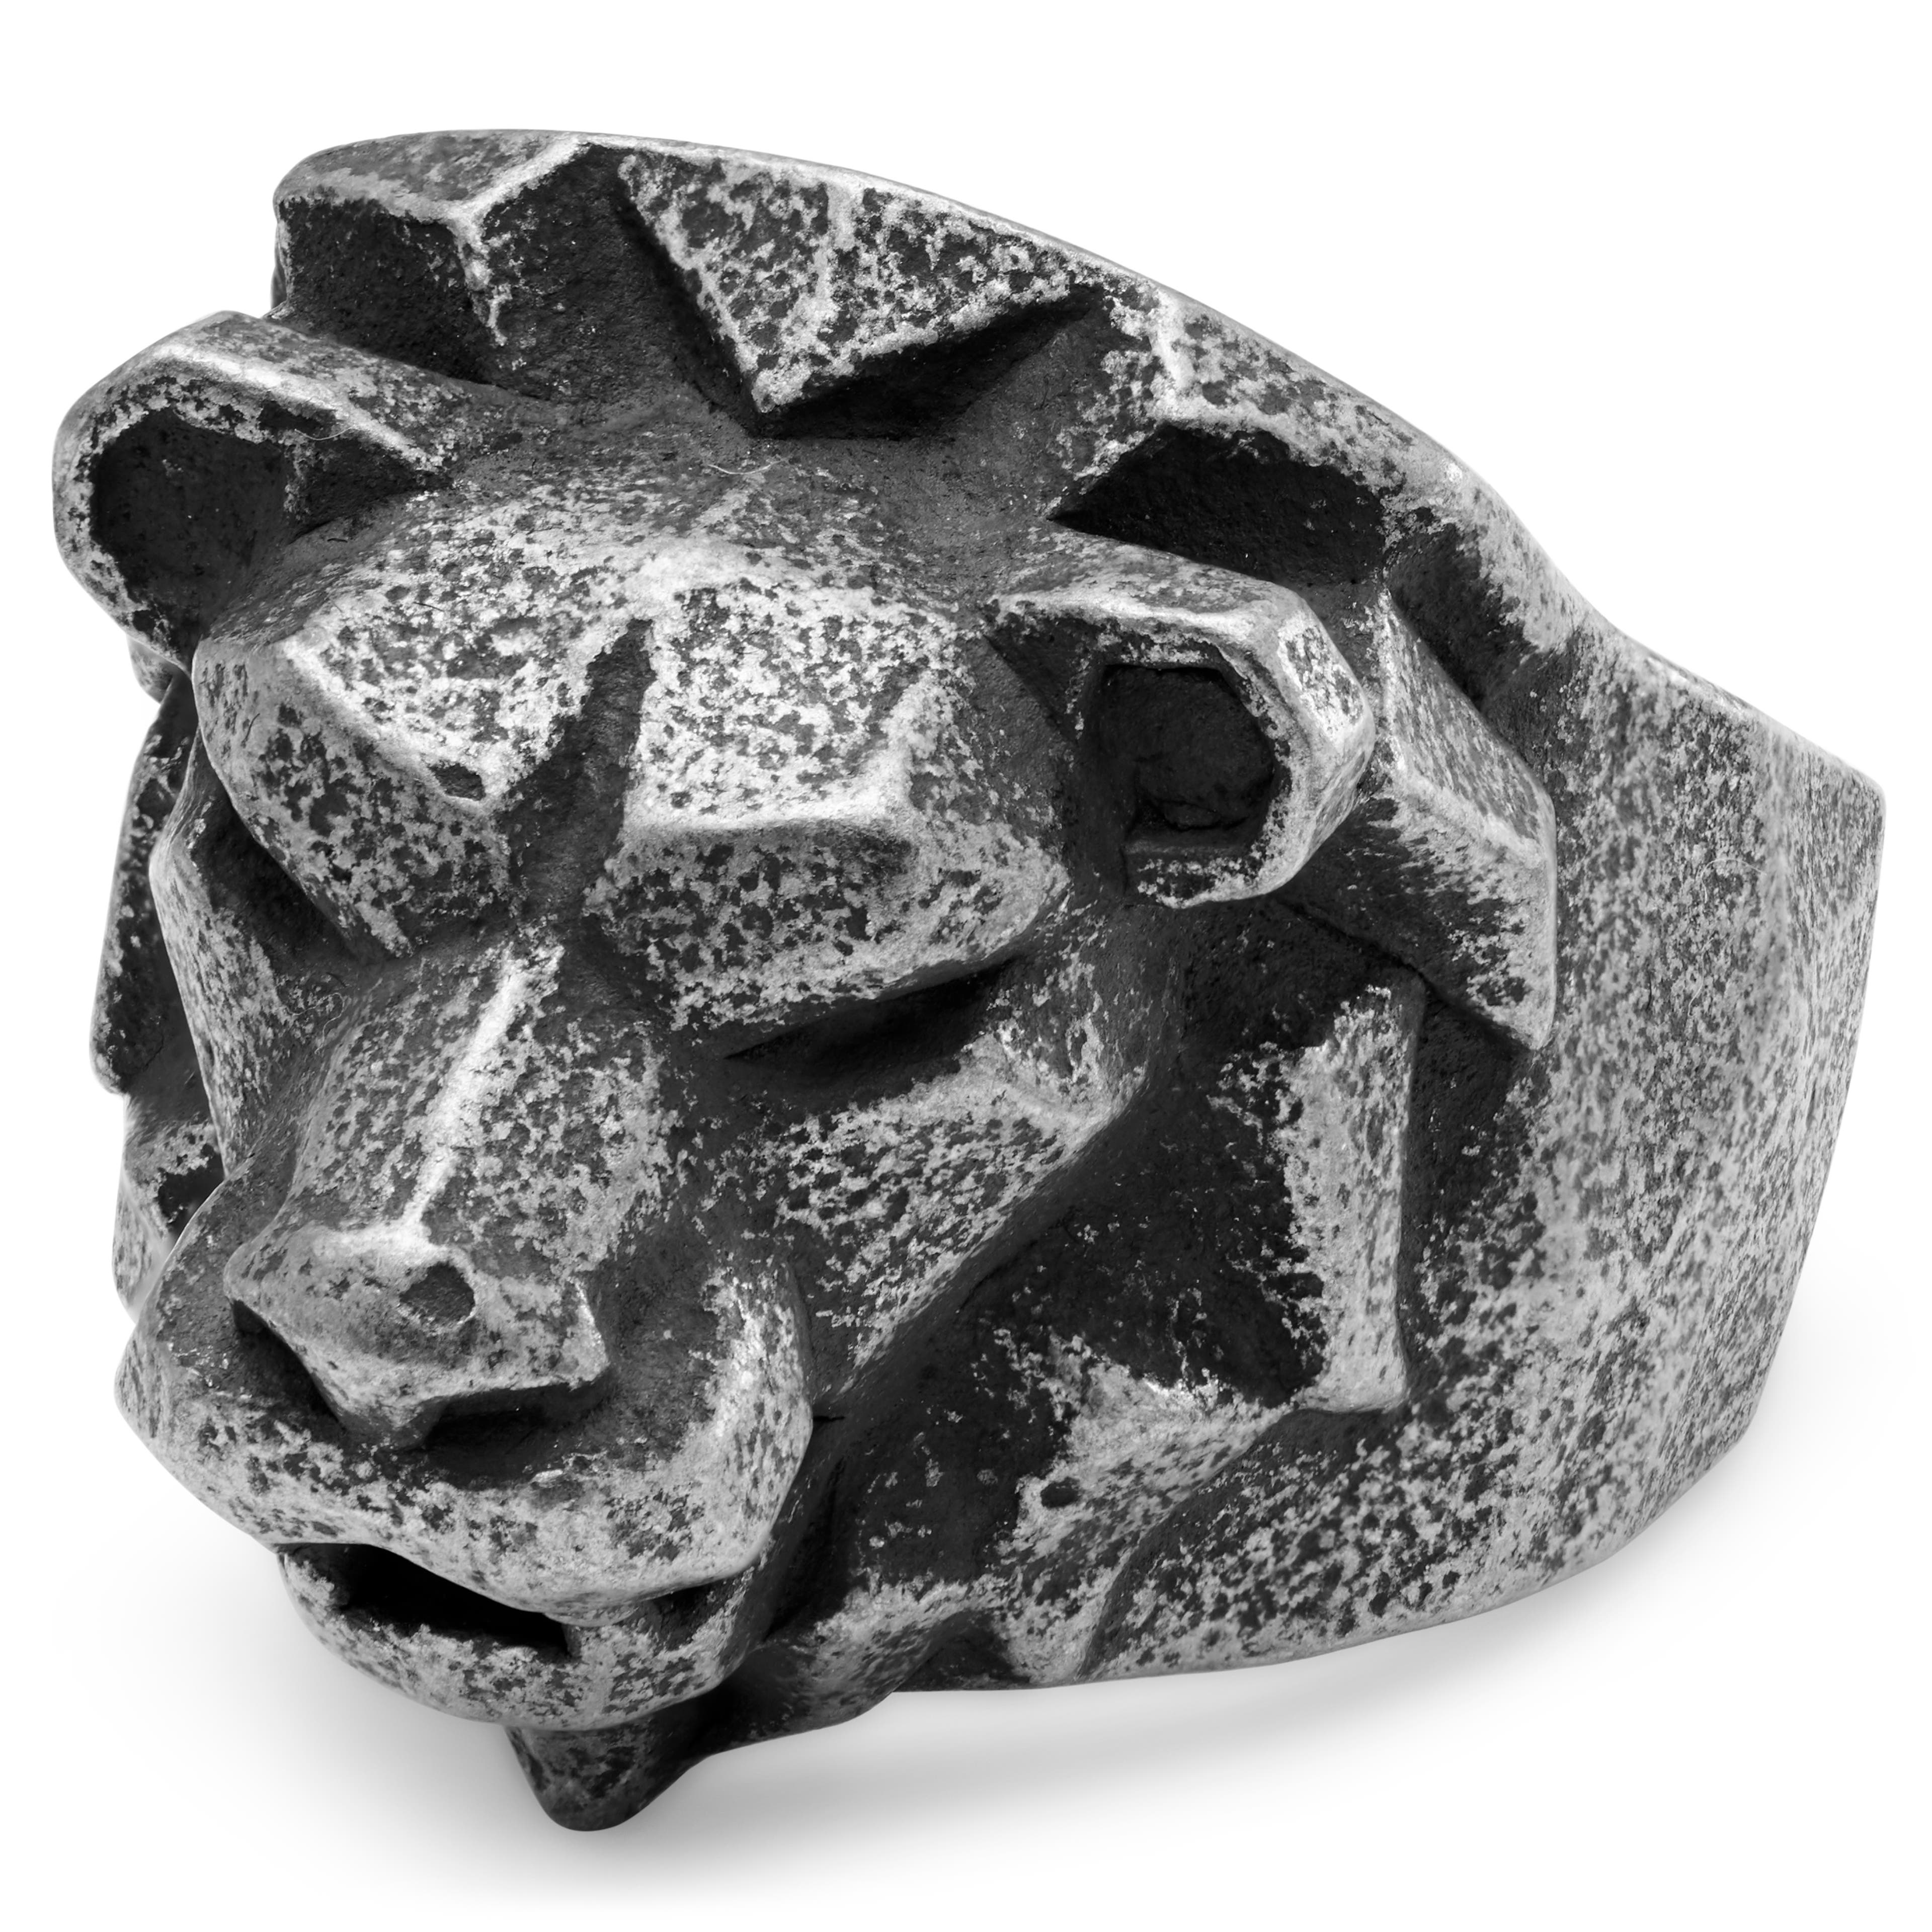 Mack | Dark gray & Black Stainless Steel Lion Ring